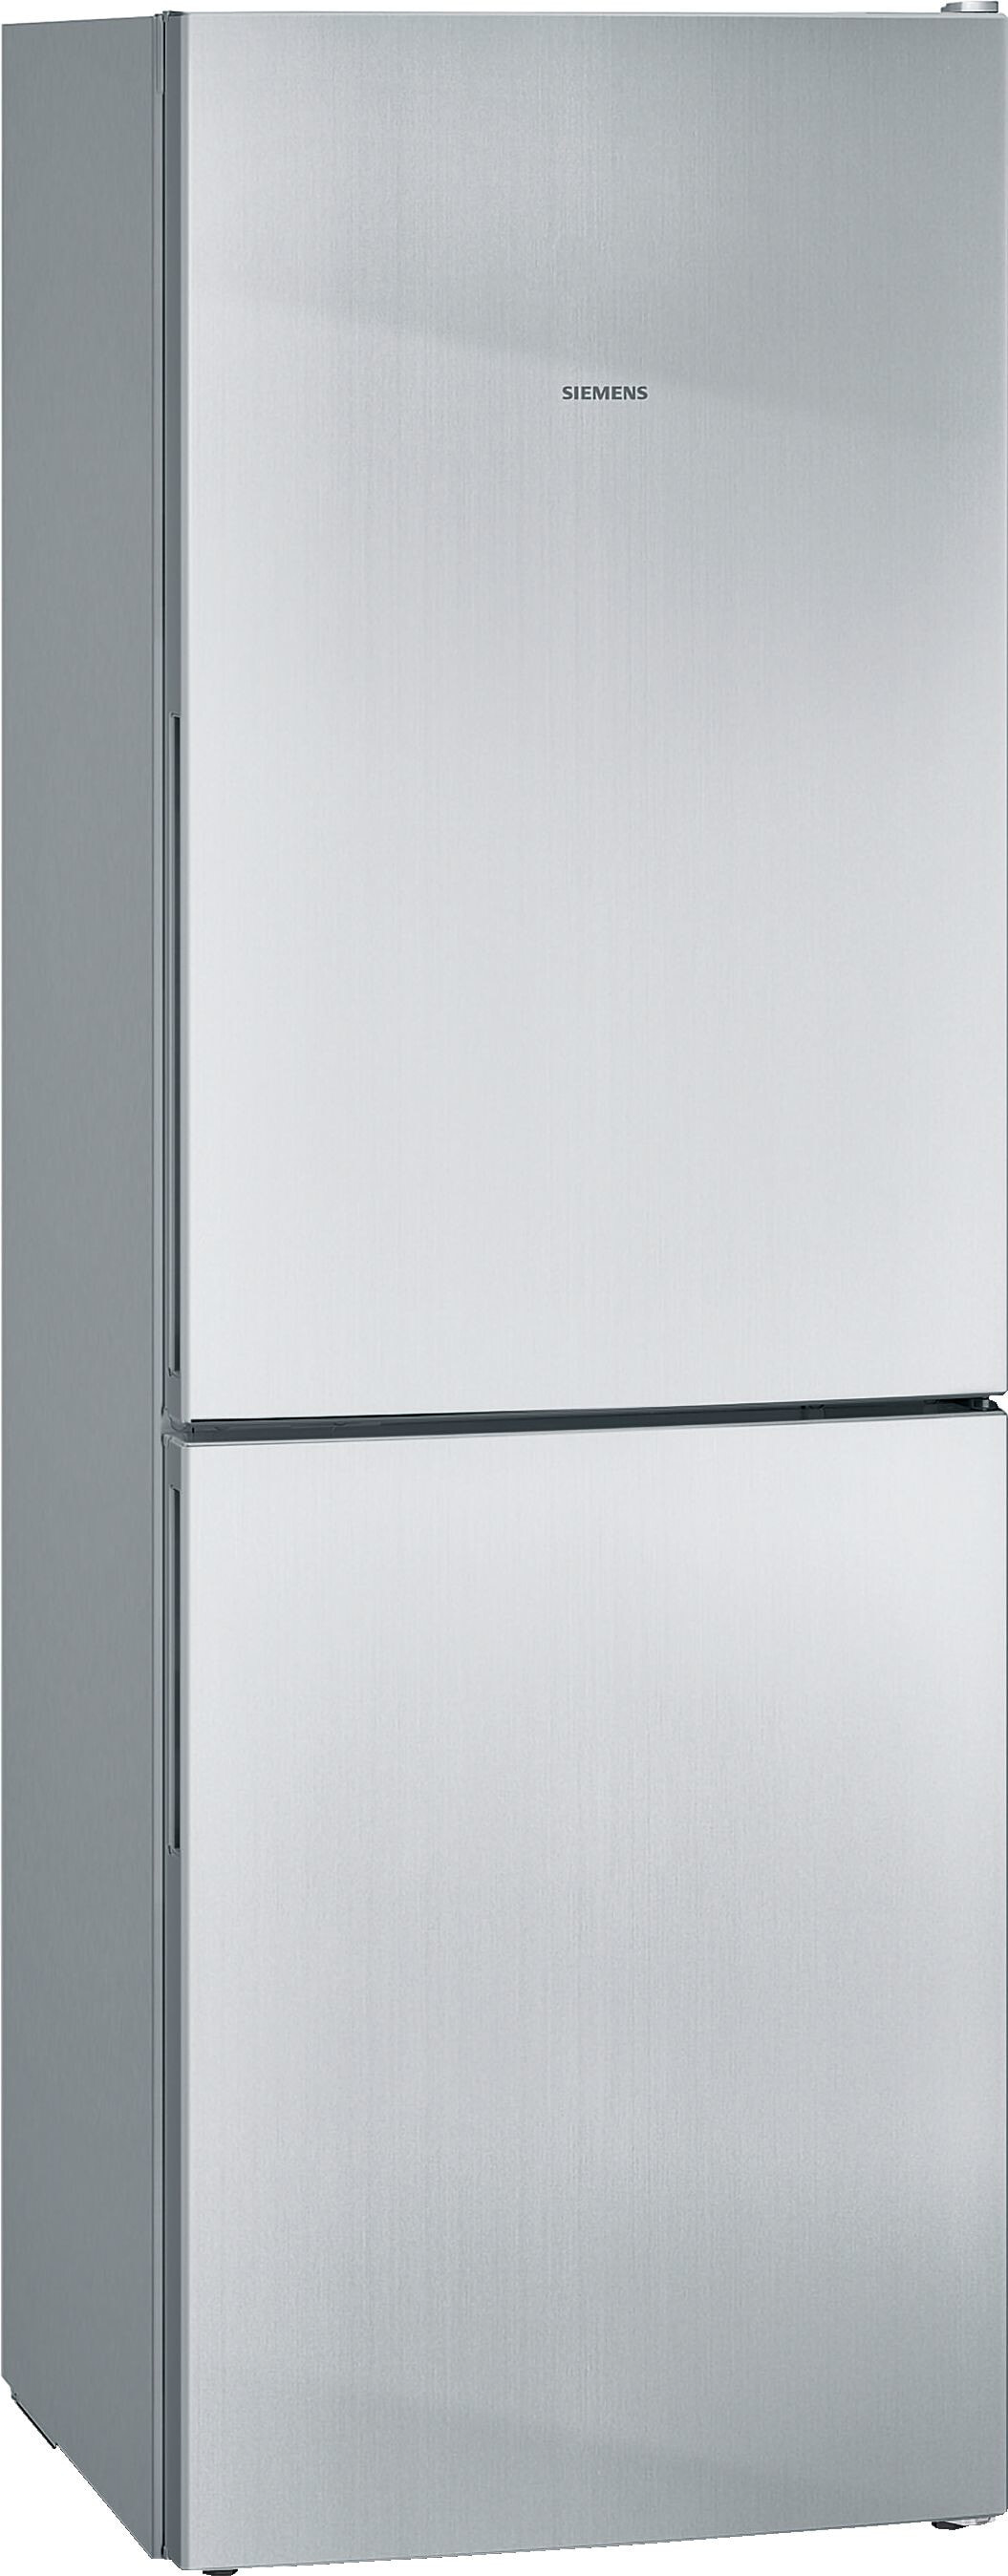 Siemens iQ300 KG33VVLEA холодильник с морозильной камерой Отдельно стоящий Нержавеющая сталь 287 L A++